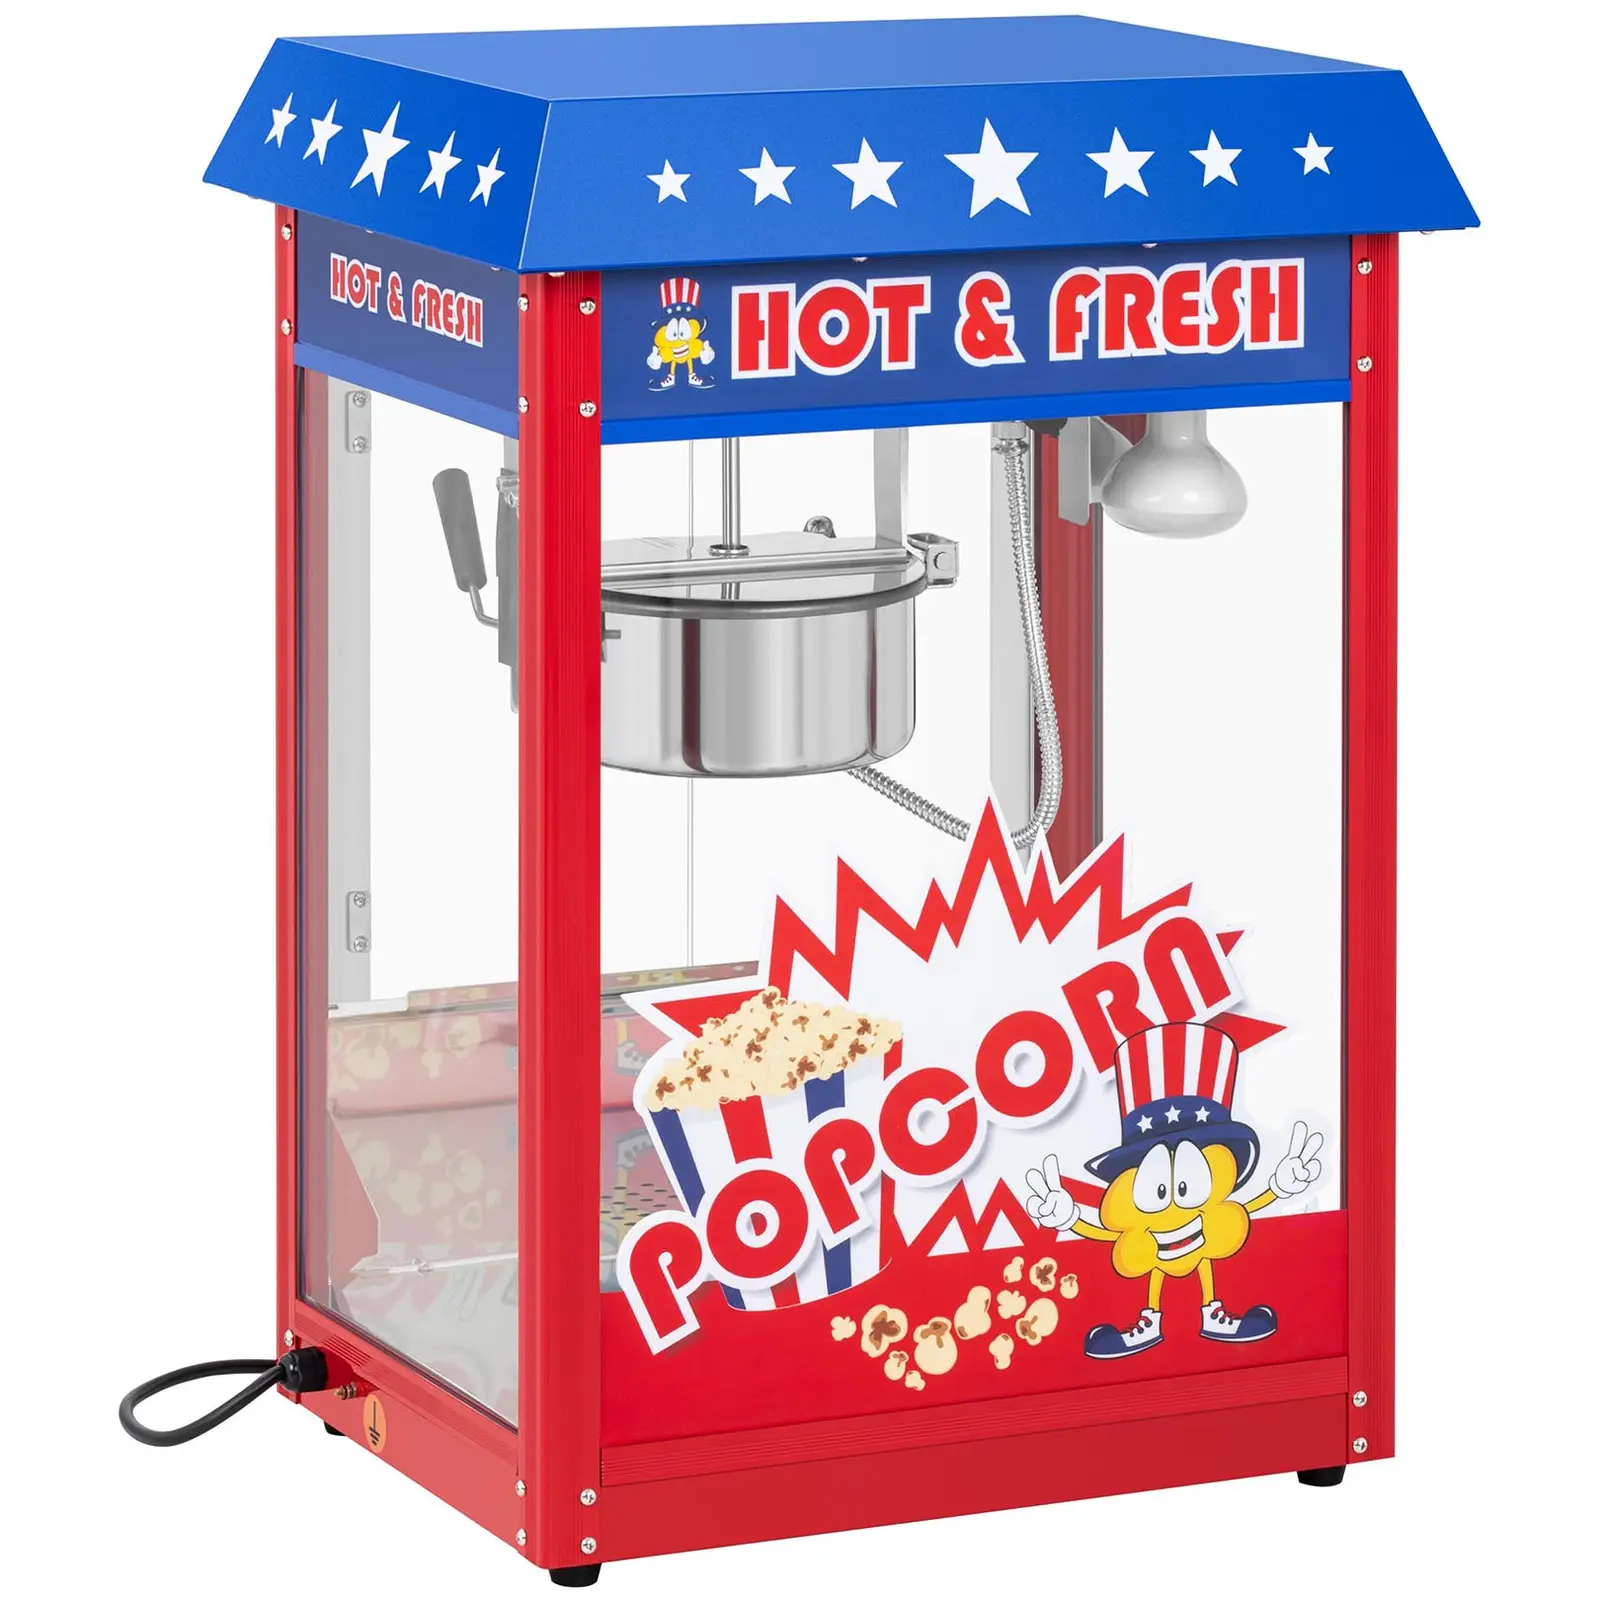 Macchina per popcorn – Design americano